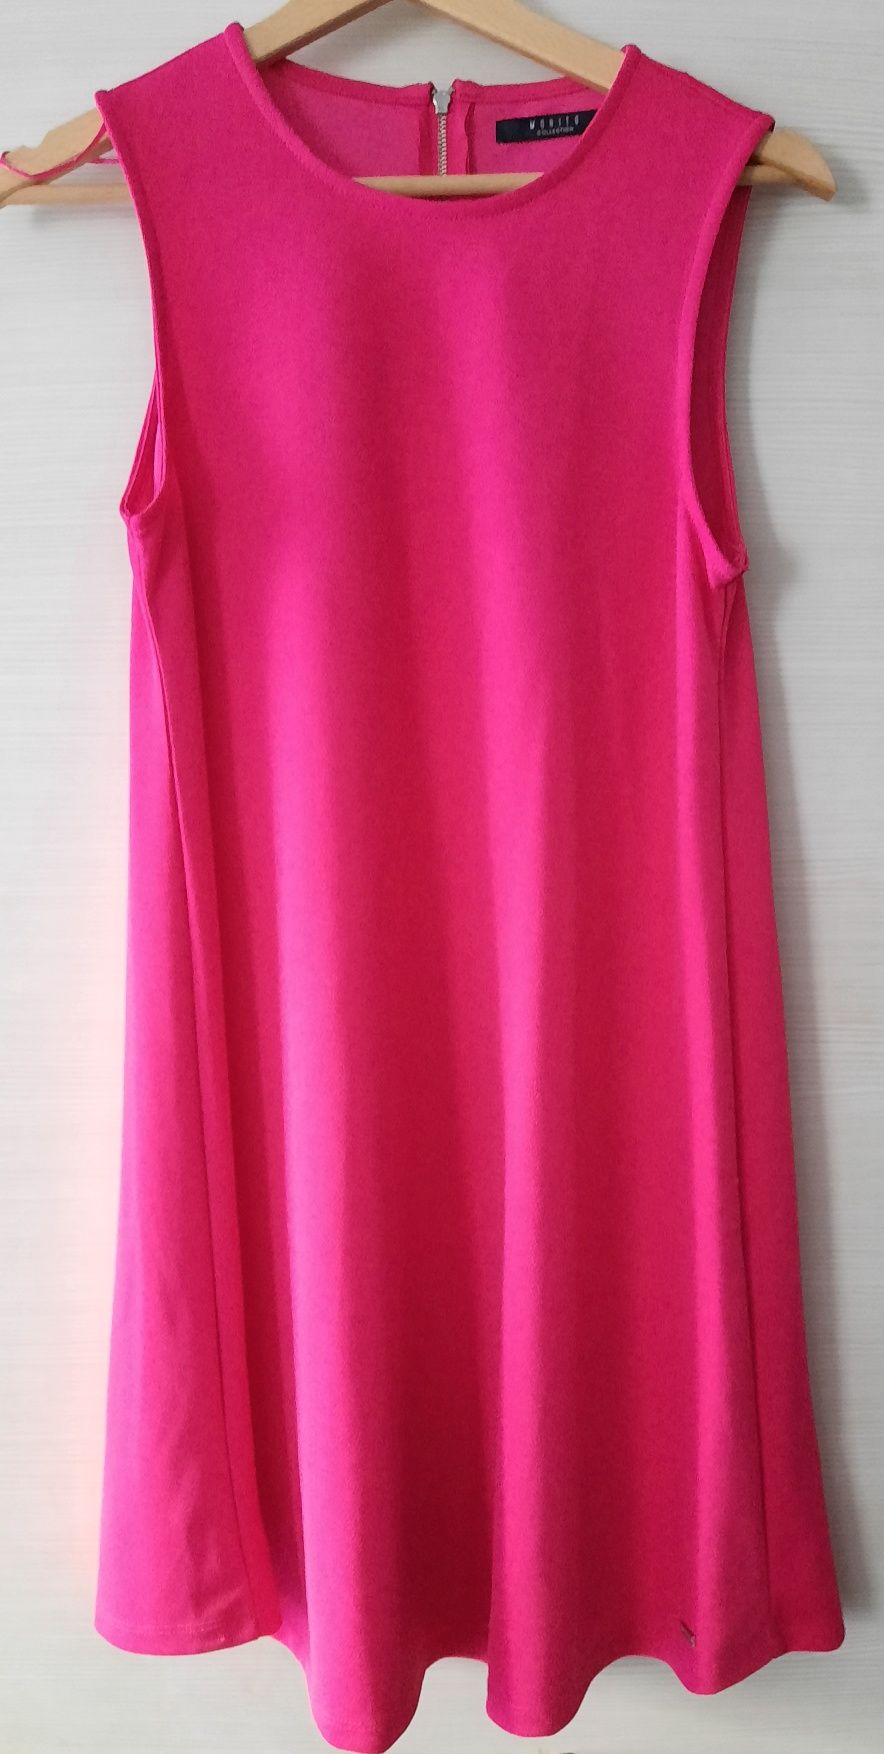 Koktajlowa sukienka w kolorze fuksji, Mohito, rozmiar XS